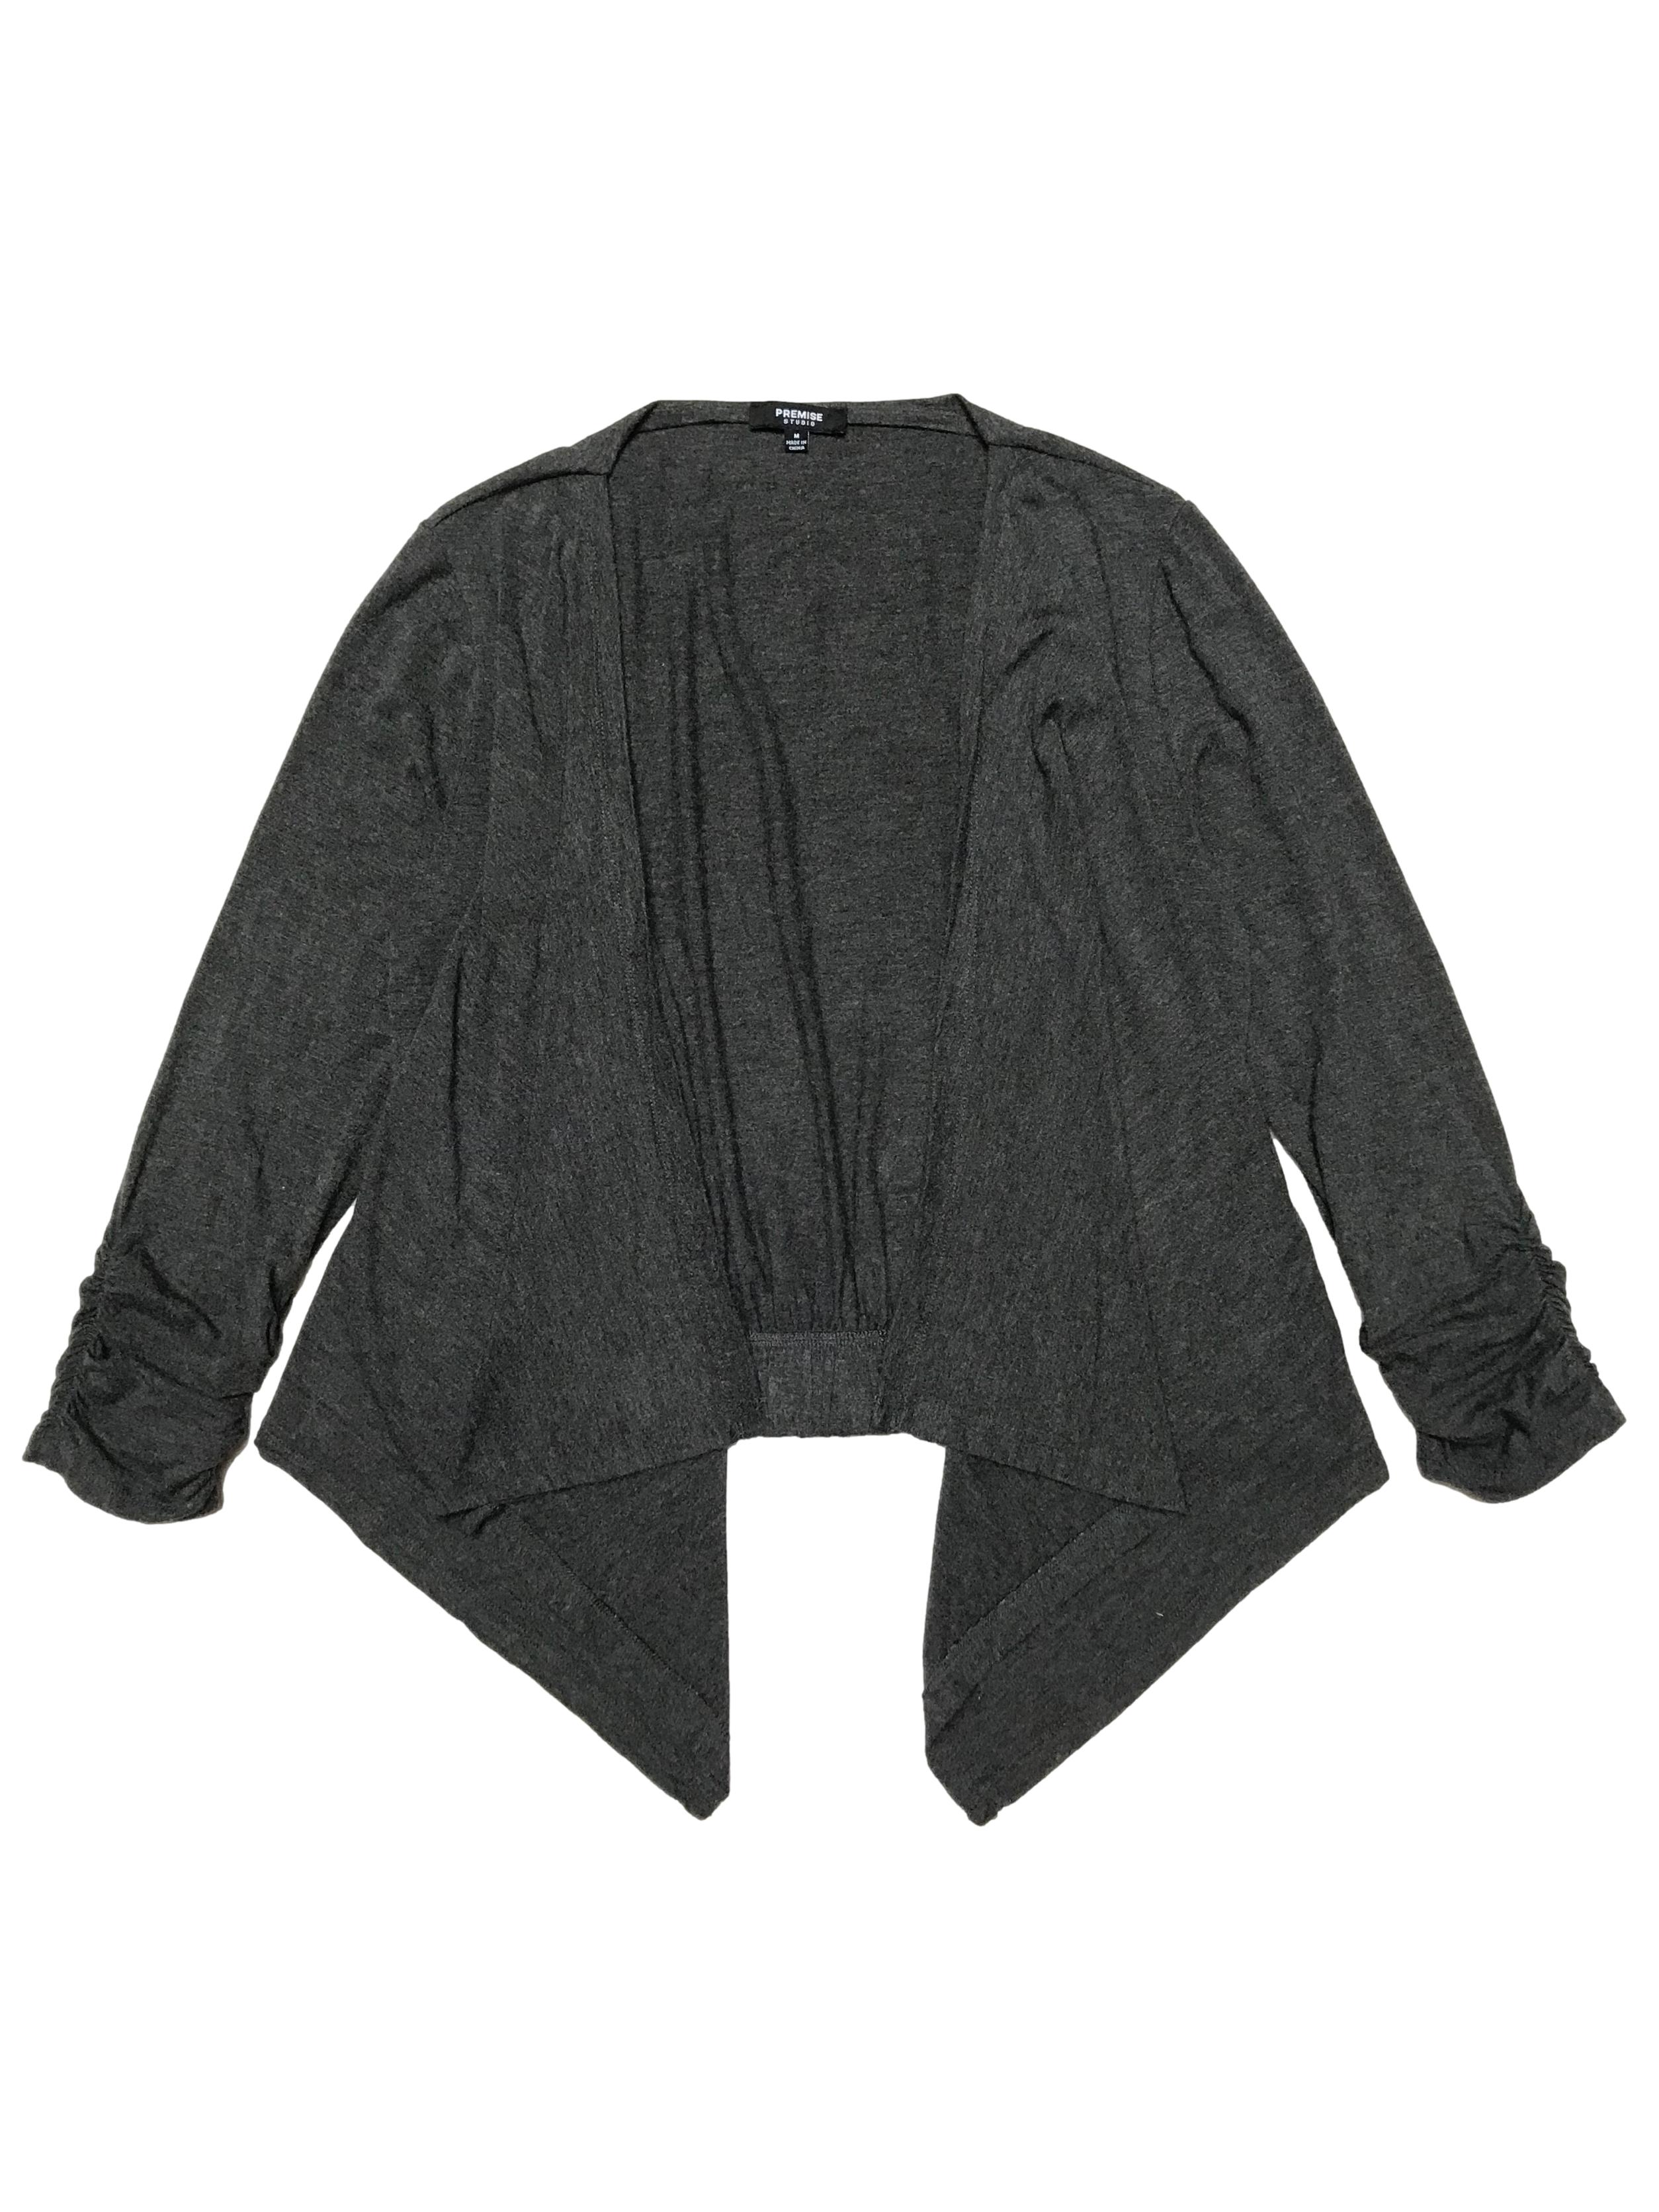 Cardigan Premise de tela tipo algodón stretch gris, drapeado en los puños y basta simétrica adelante. Largo 45 - 65cm